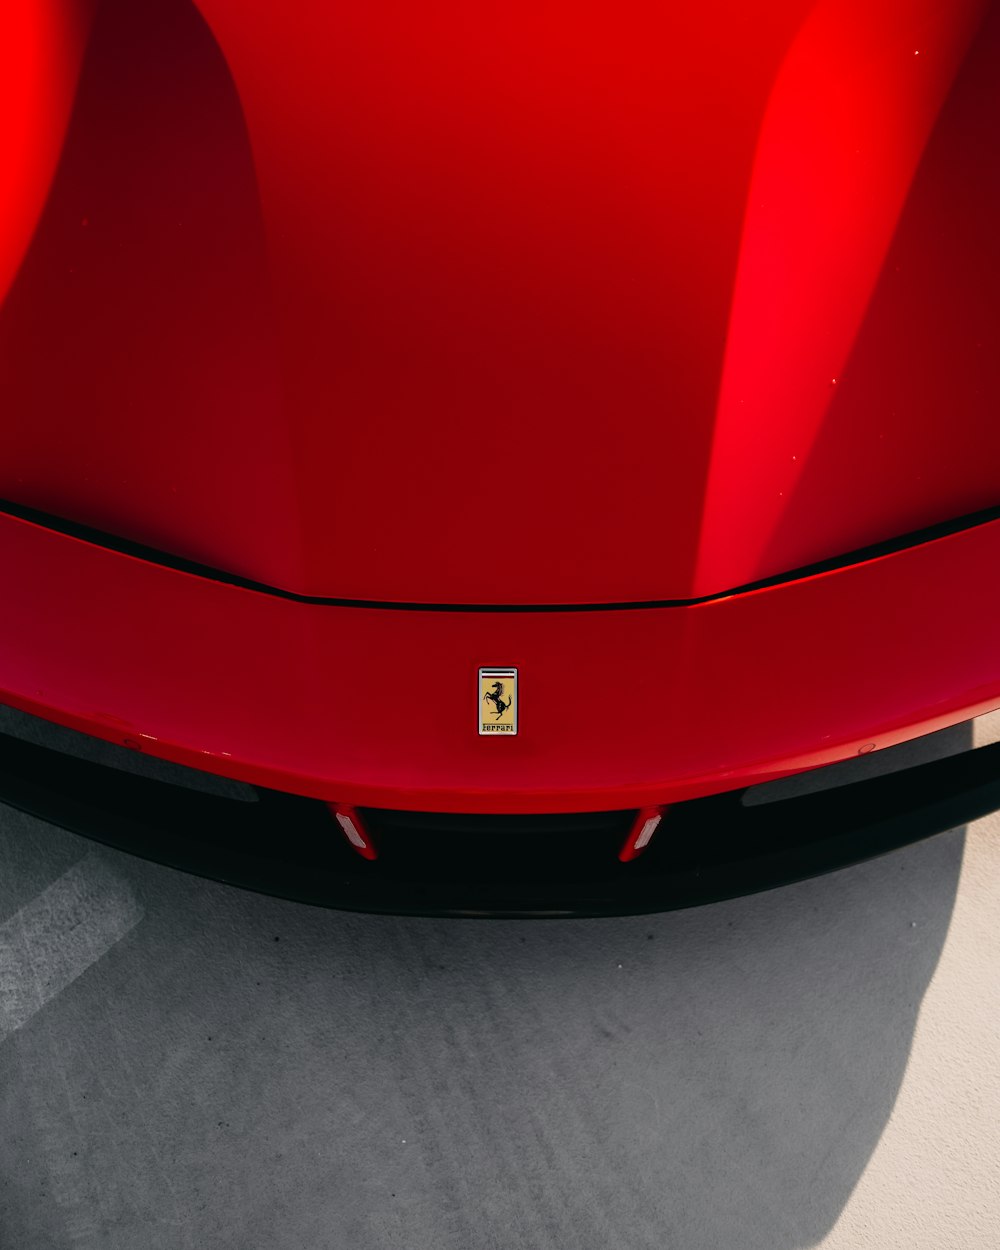 Coche Ferrari rojo sobre suelo de hormigón gris